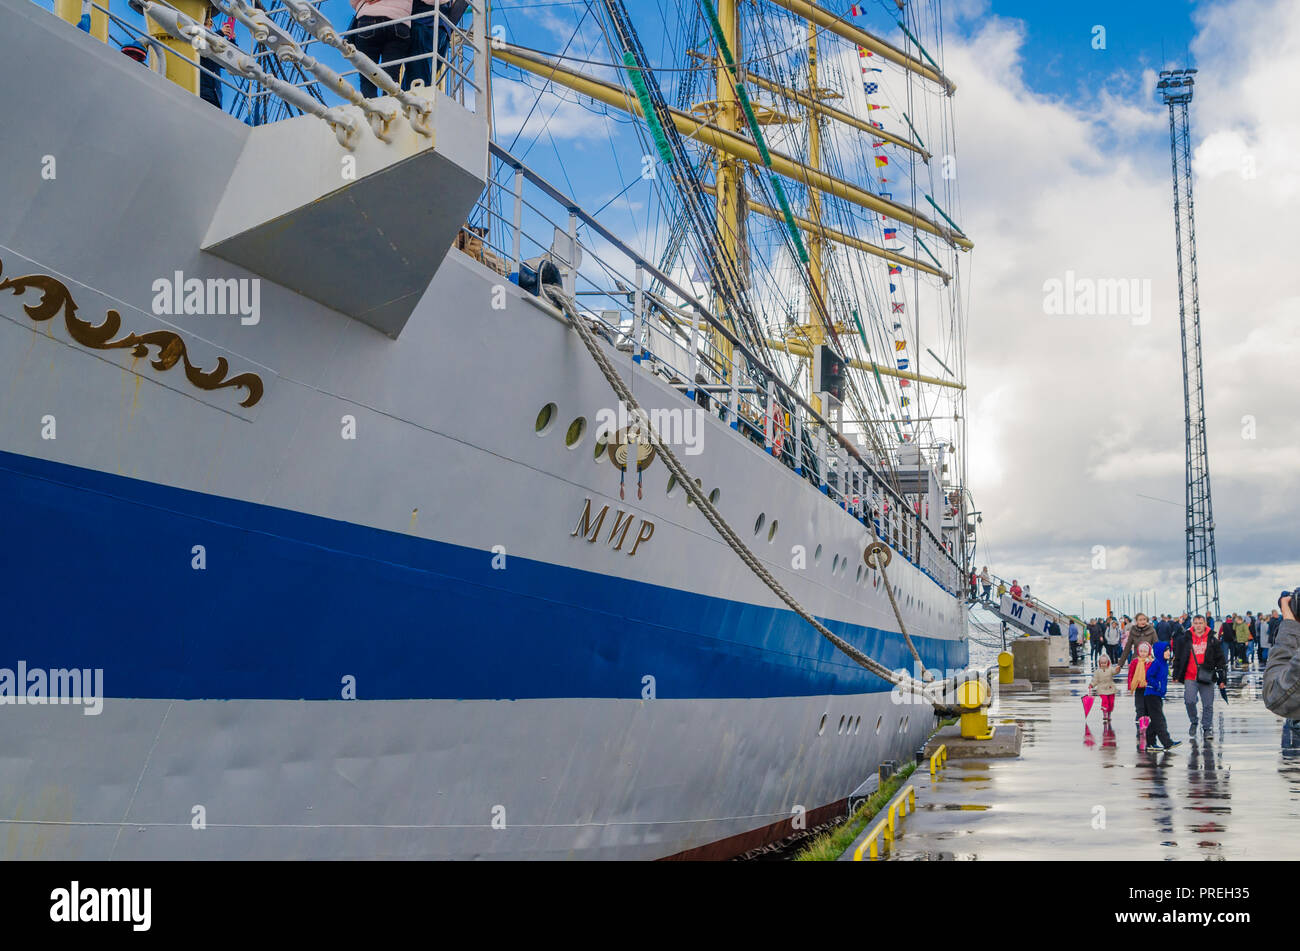 TALLINN, ESTONIE - 23 septembre, 2018. La barque russe 'MIR' Banque D'Images